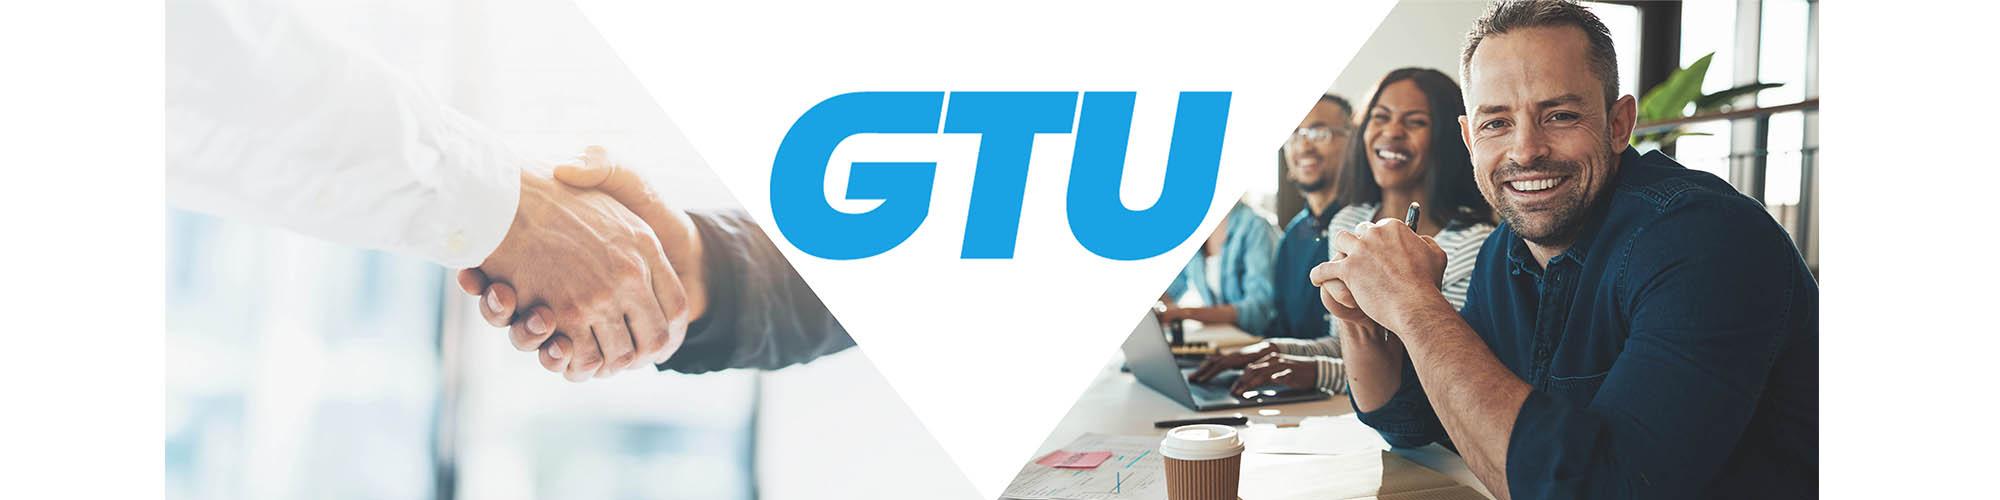 GTU Unternehmensgruppe